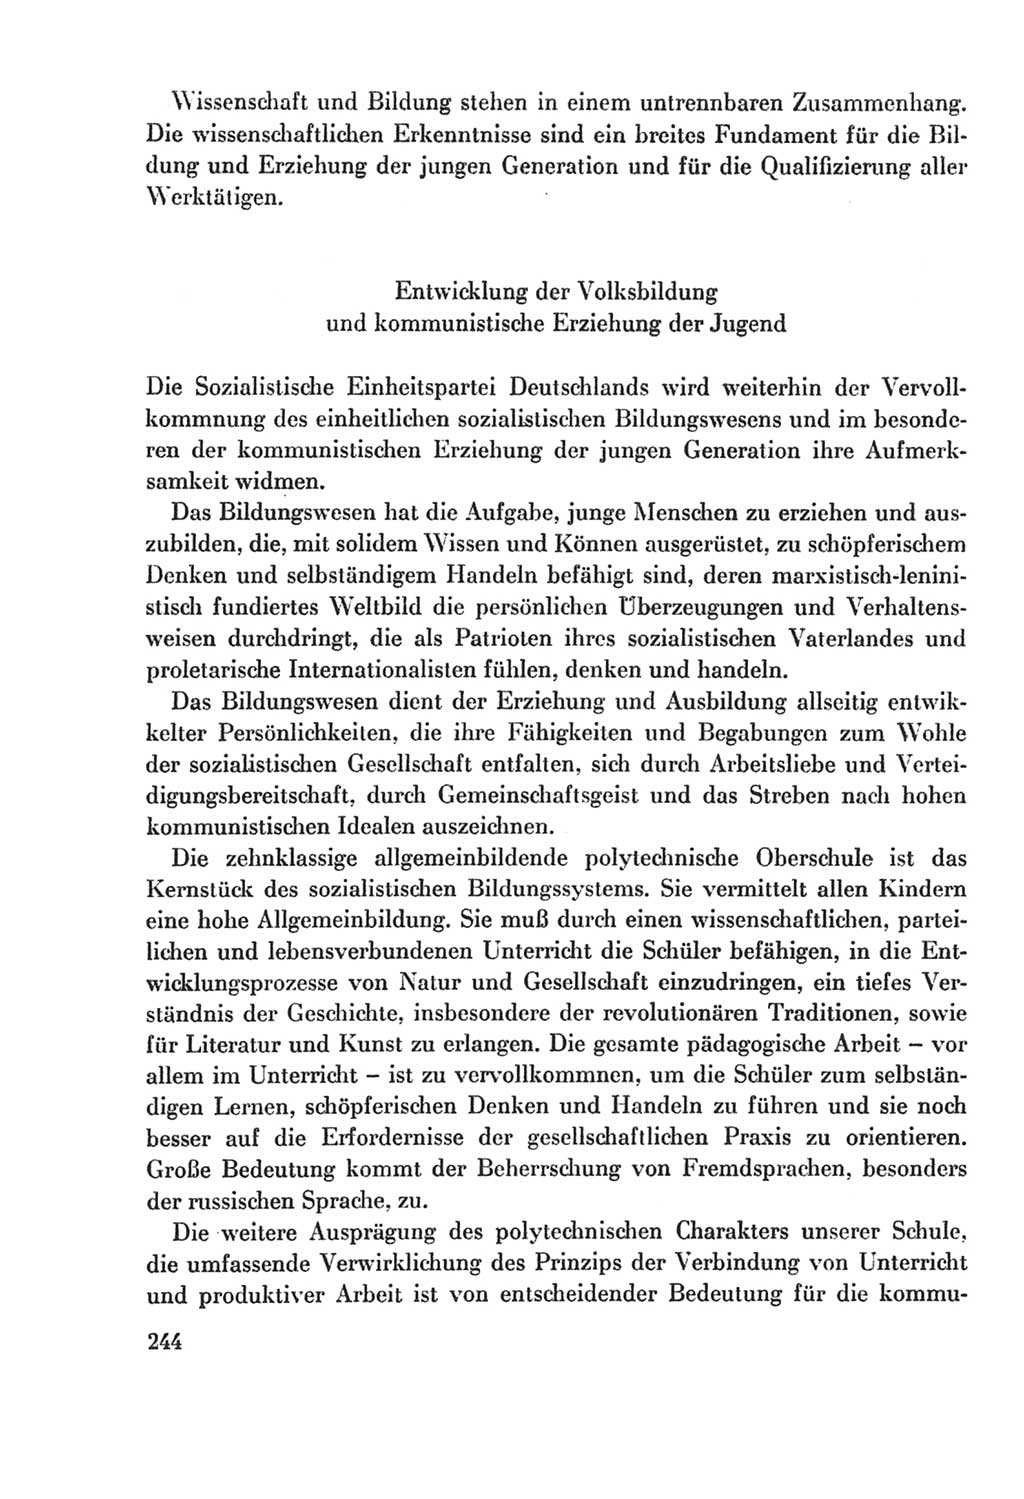 Protokoll der Verhandlungen des Ⅸ. Parteitages der Sozialistischen Einheitspartei Deutschlands (SED) [Deutsche Demokratische Republik (DDR)] 1976, Band 2, Seite 244 (Prot. Verh. Ⅸ. PT SED DDR 1976, Bd. 2, S. 244)